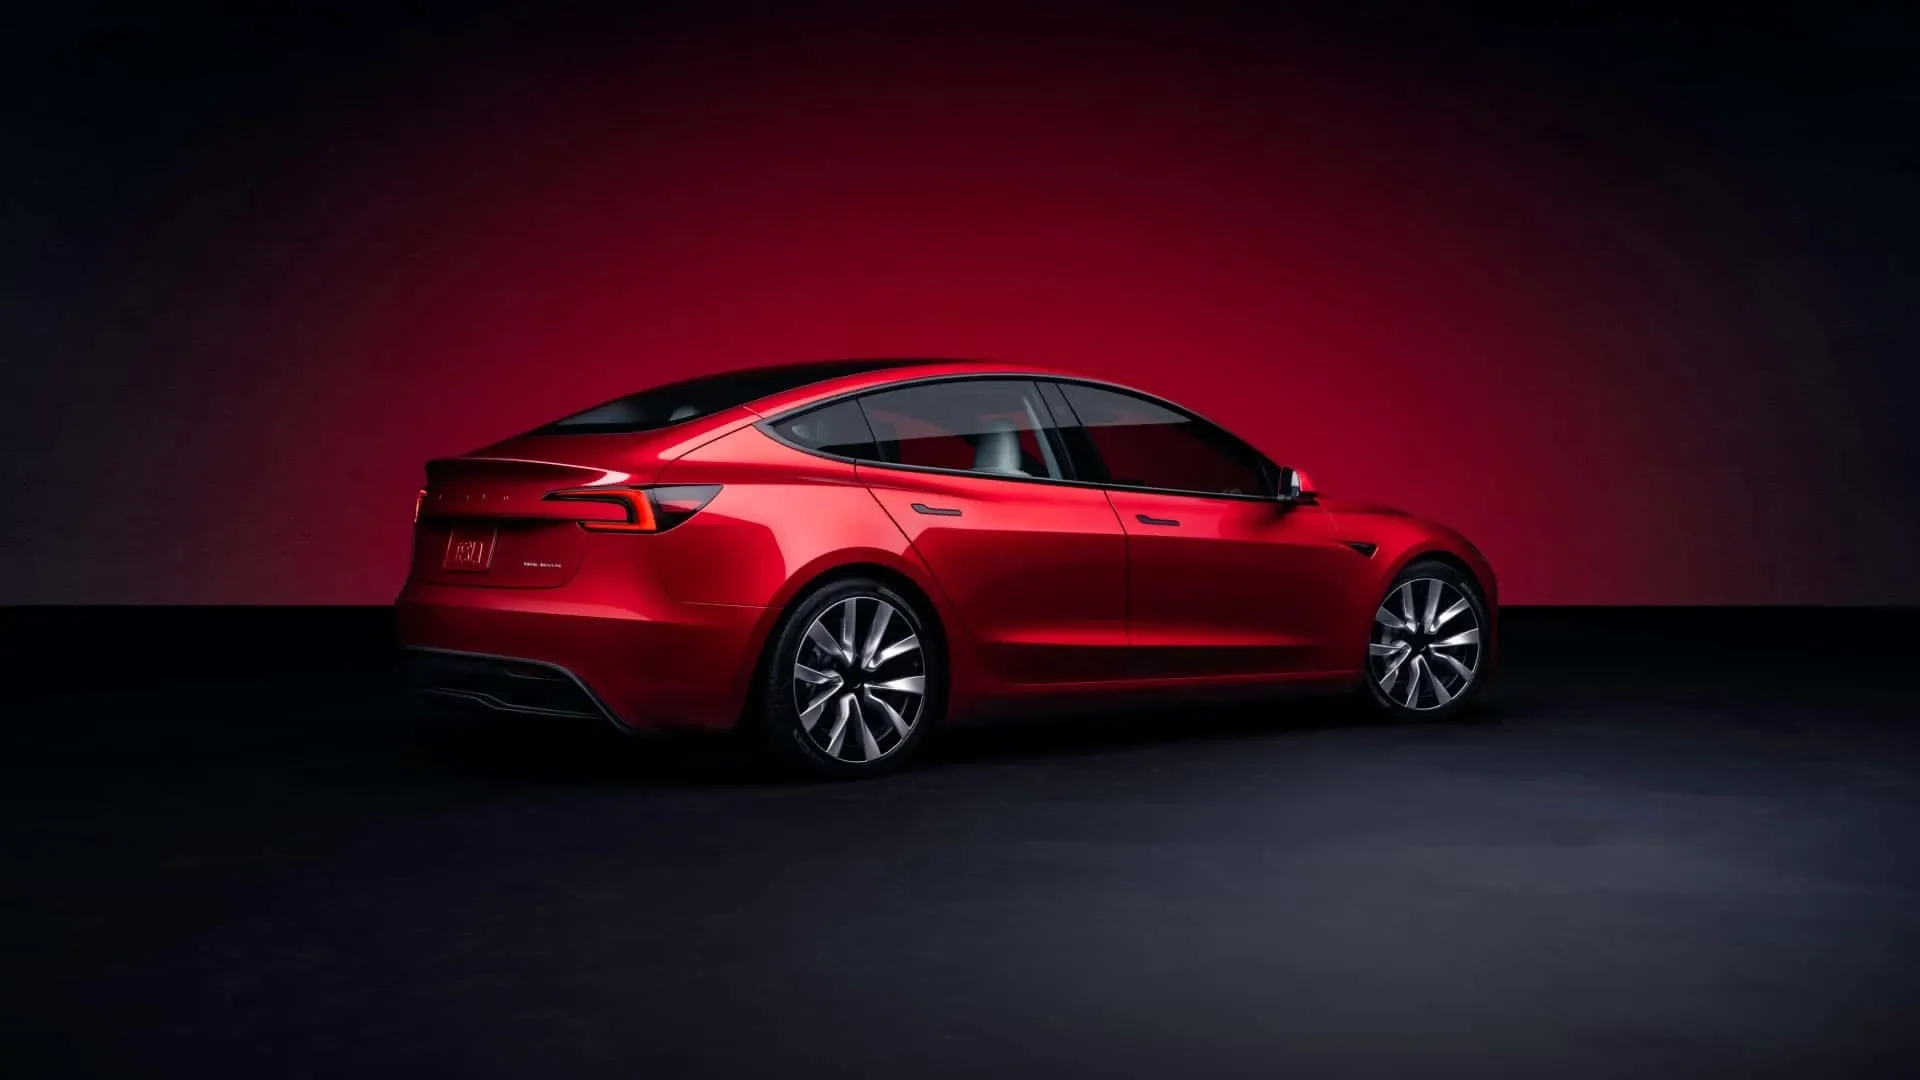 New Tesla Model 3 back